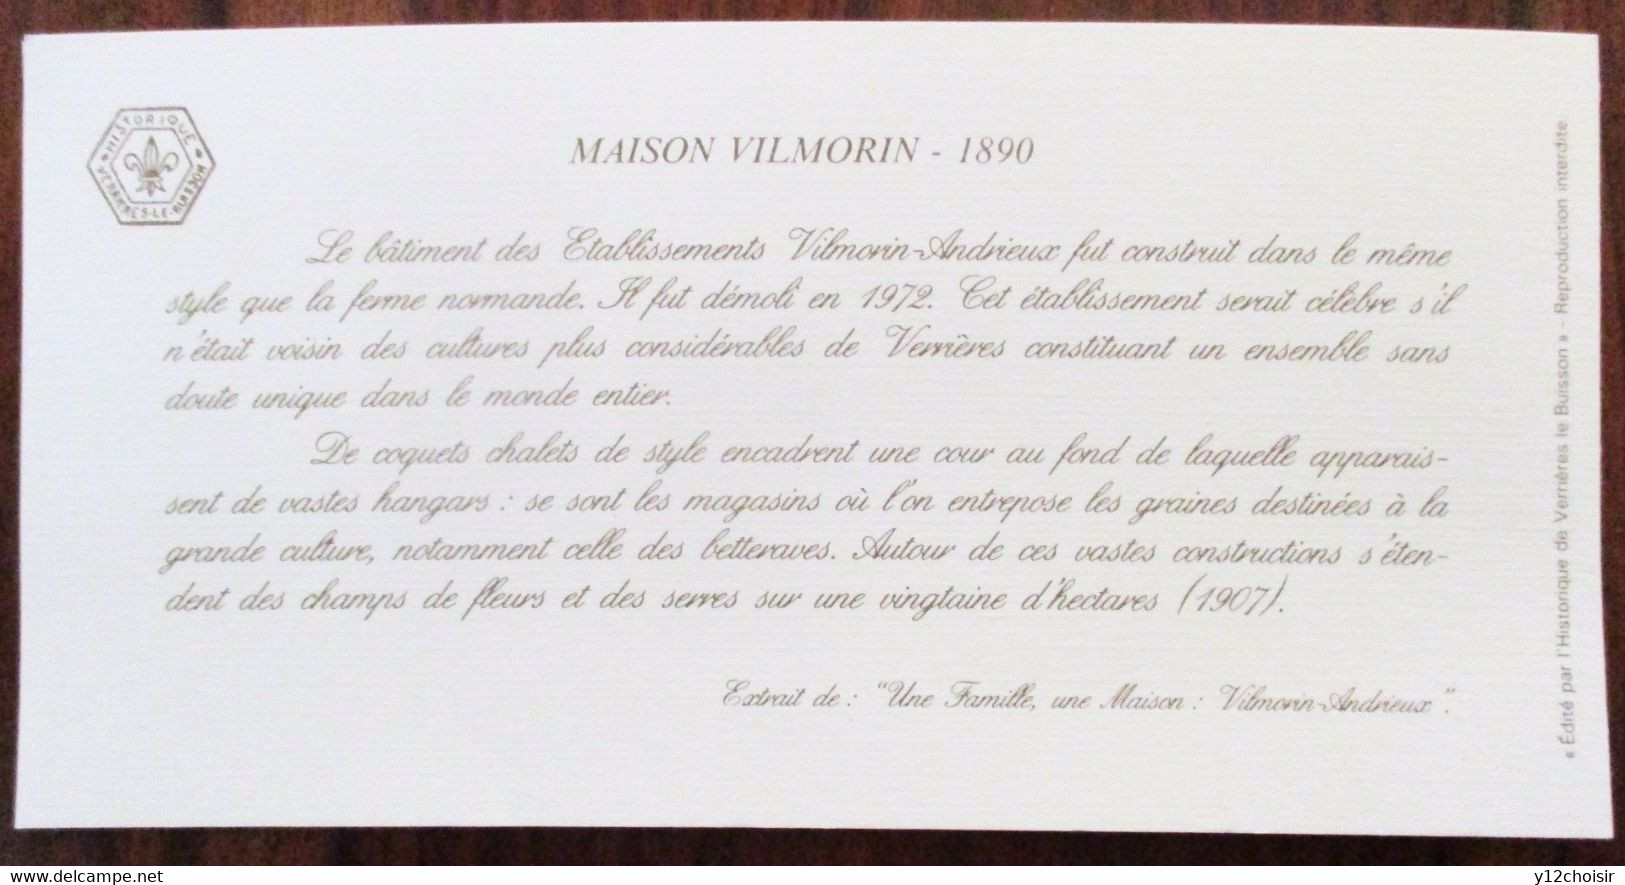 FEUILLET CARTE MAISON VILMORIN 1890 MASSY VILLAINES HISTORIQUE VERRIERES-LE-BUISSON ESSONNE 91 - Advertising